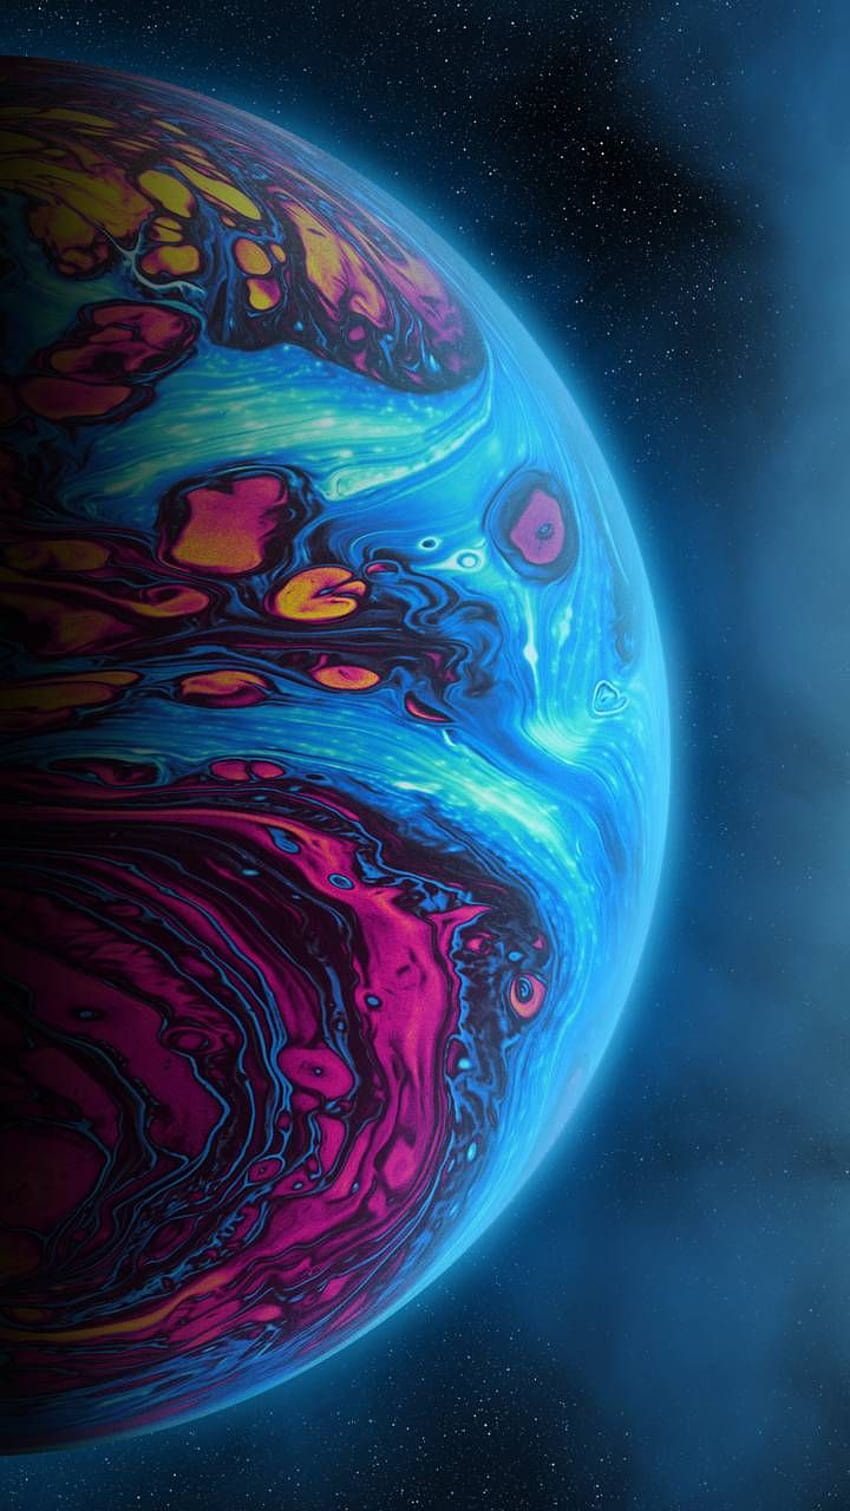 Planet von Geoglyser - ae now. Durchsuchen Sie Millionen beliebter Fluid Wall im Jahr 2021. Planeten, coole Galaxien, Neon, Neon-Weltraum HD-Handy-Hintergrundbild